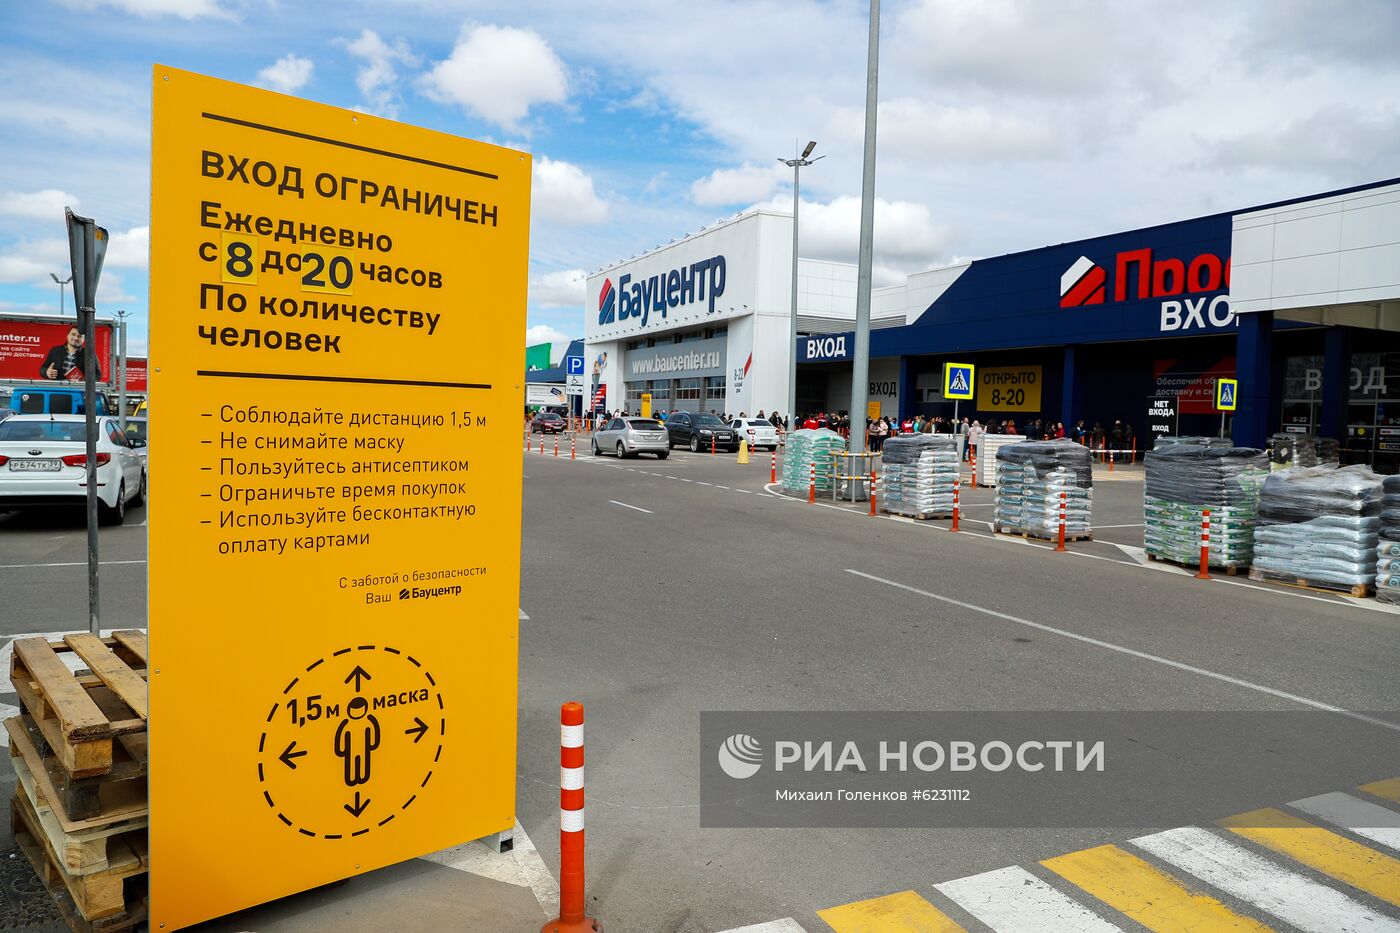 Сотни жителей Калининграда выстроились в очереди у открывшихся строительных магазинов